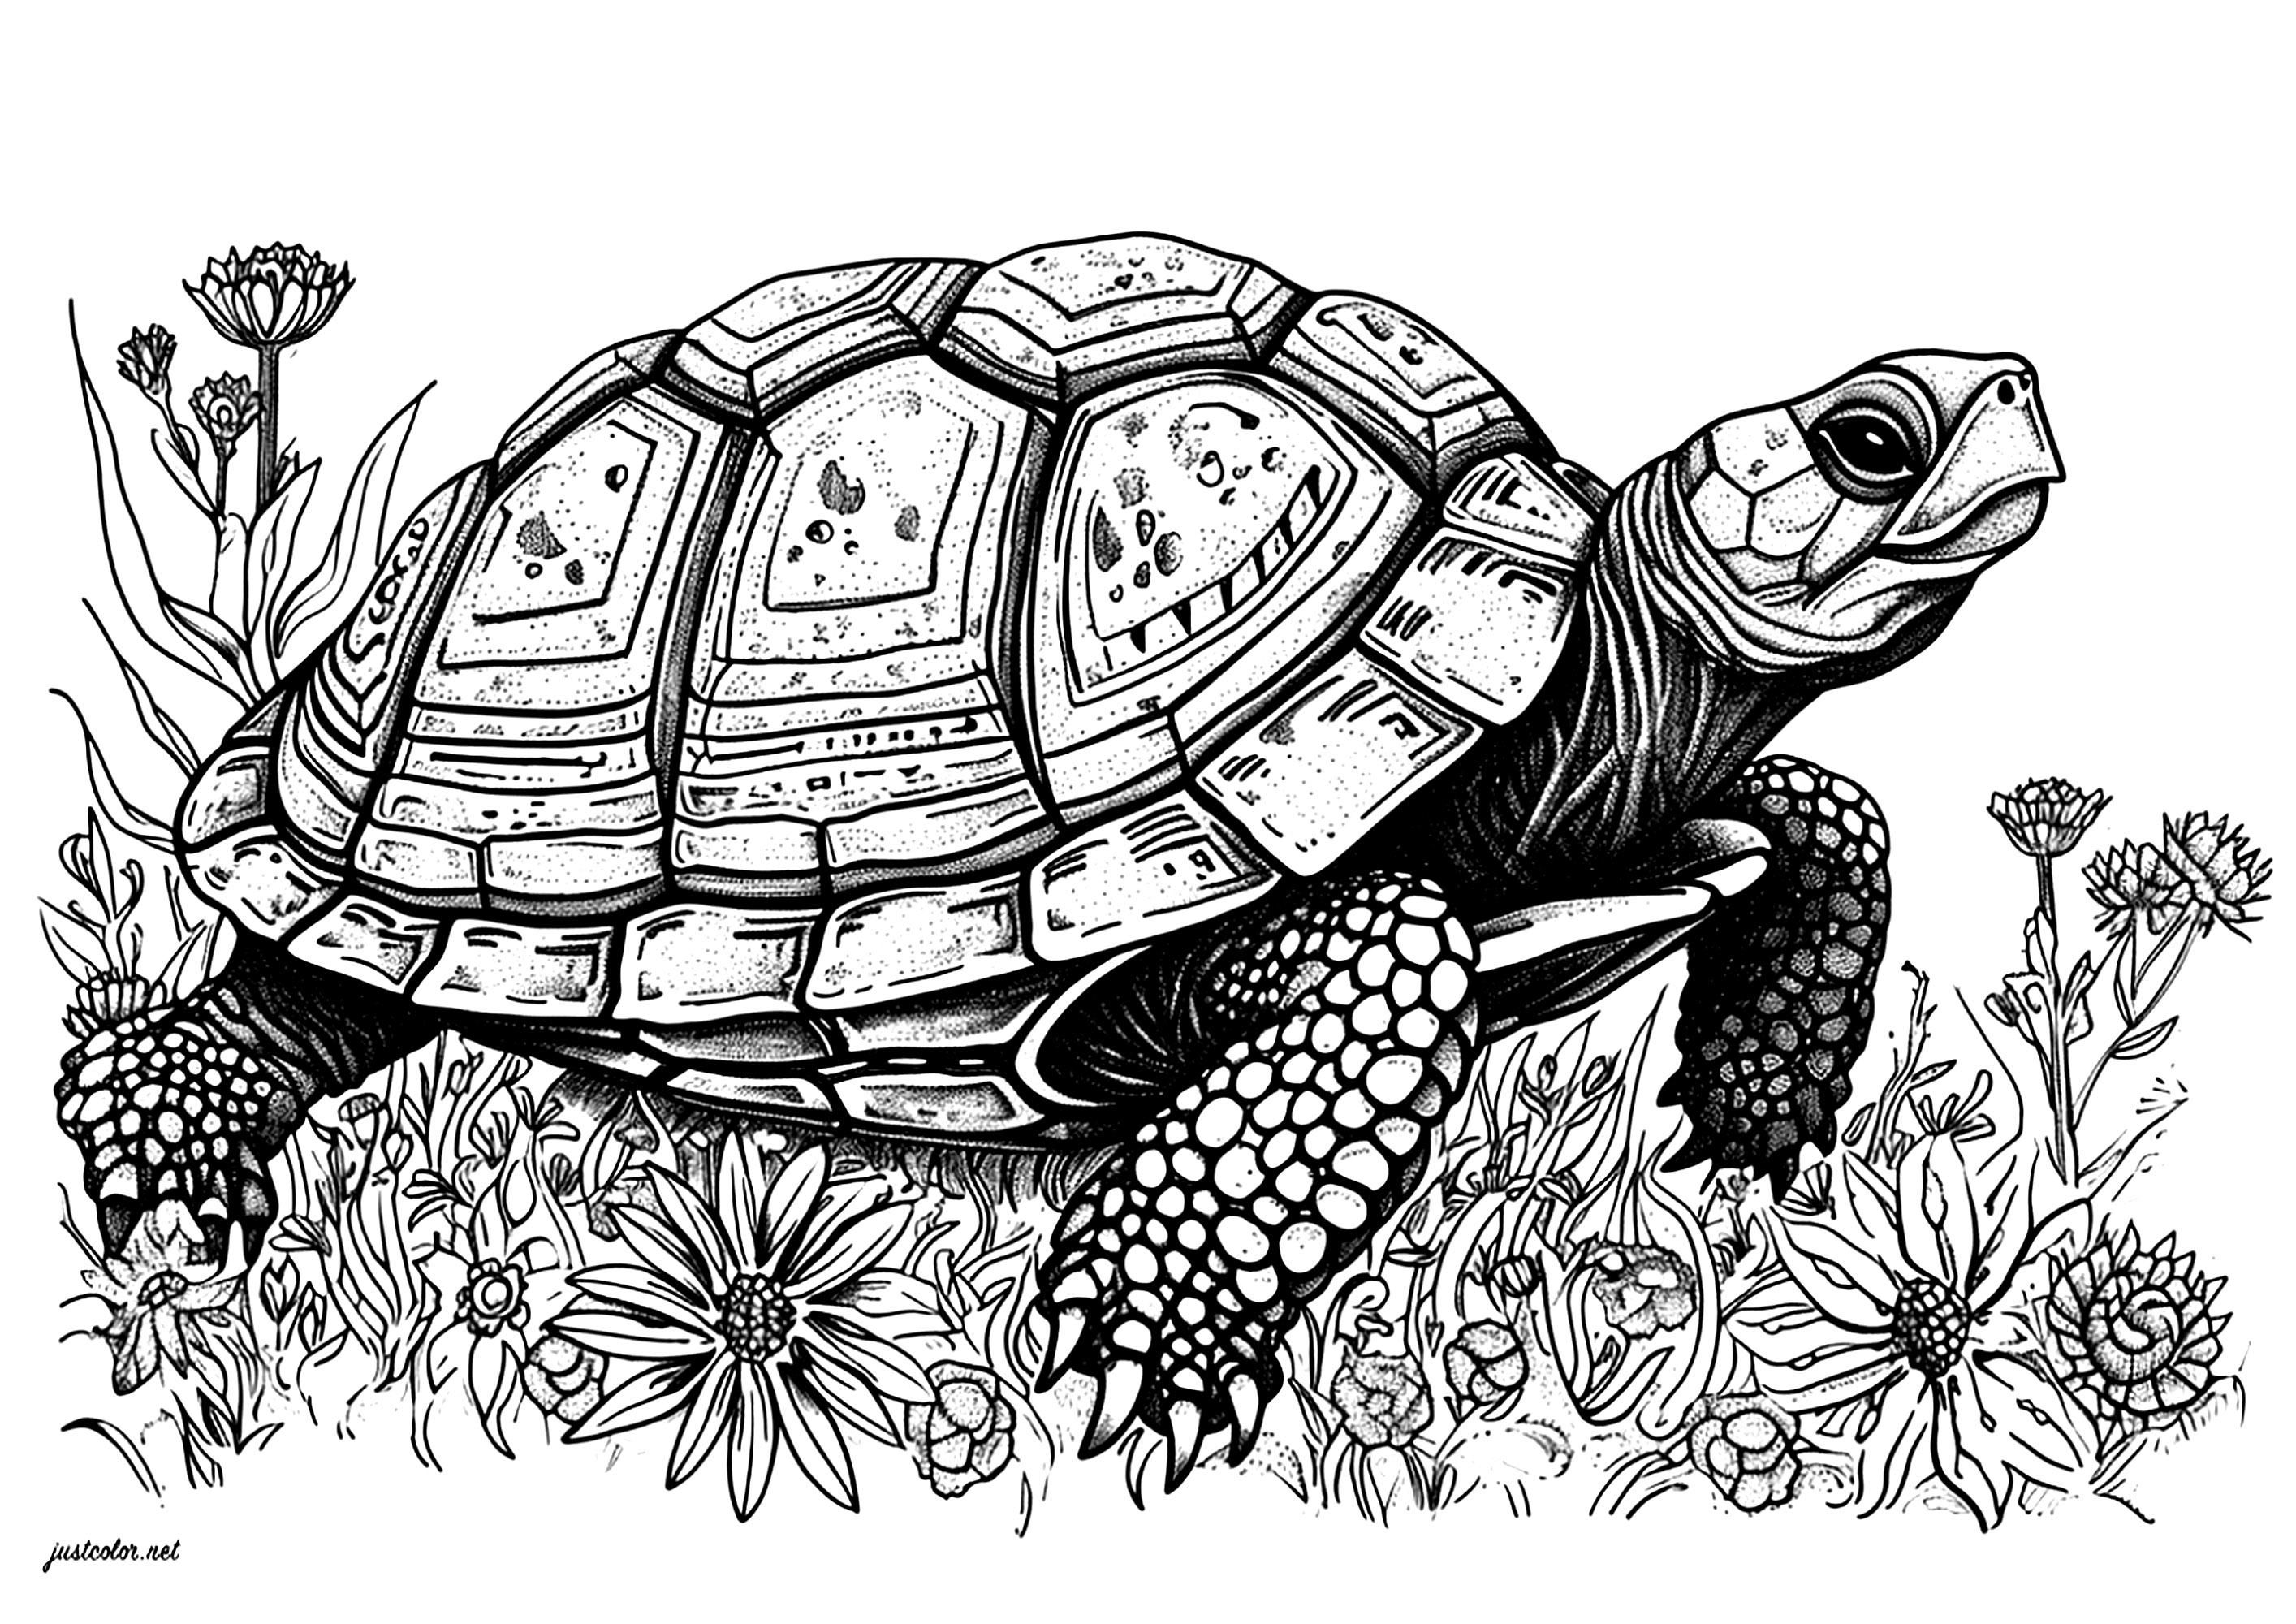 Belle tortue avançant lentement au milieu de jolies fleurs